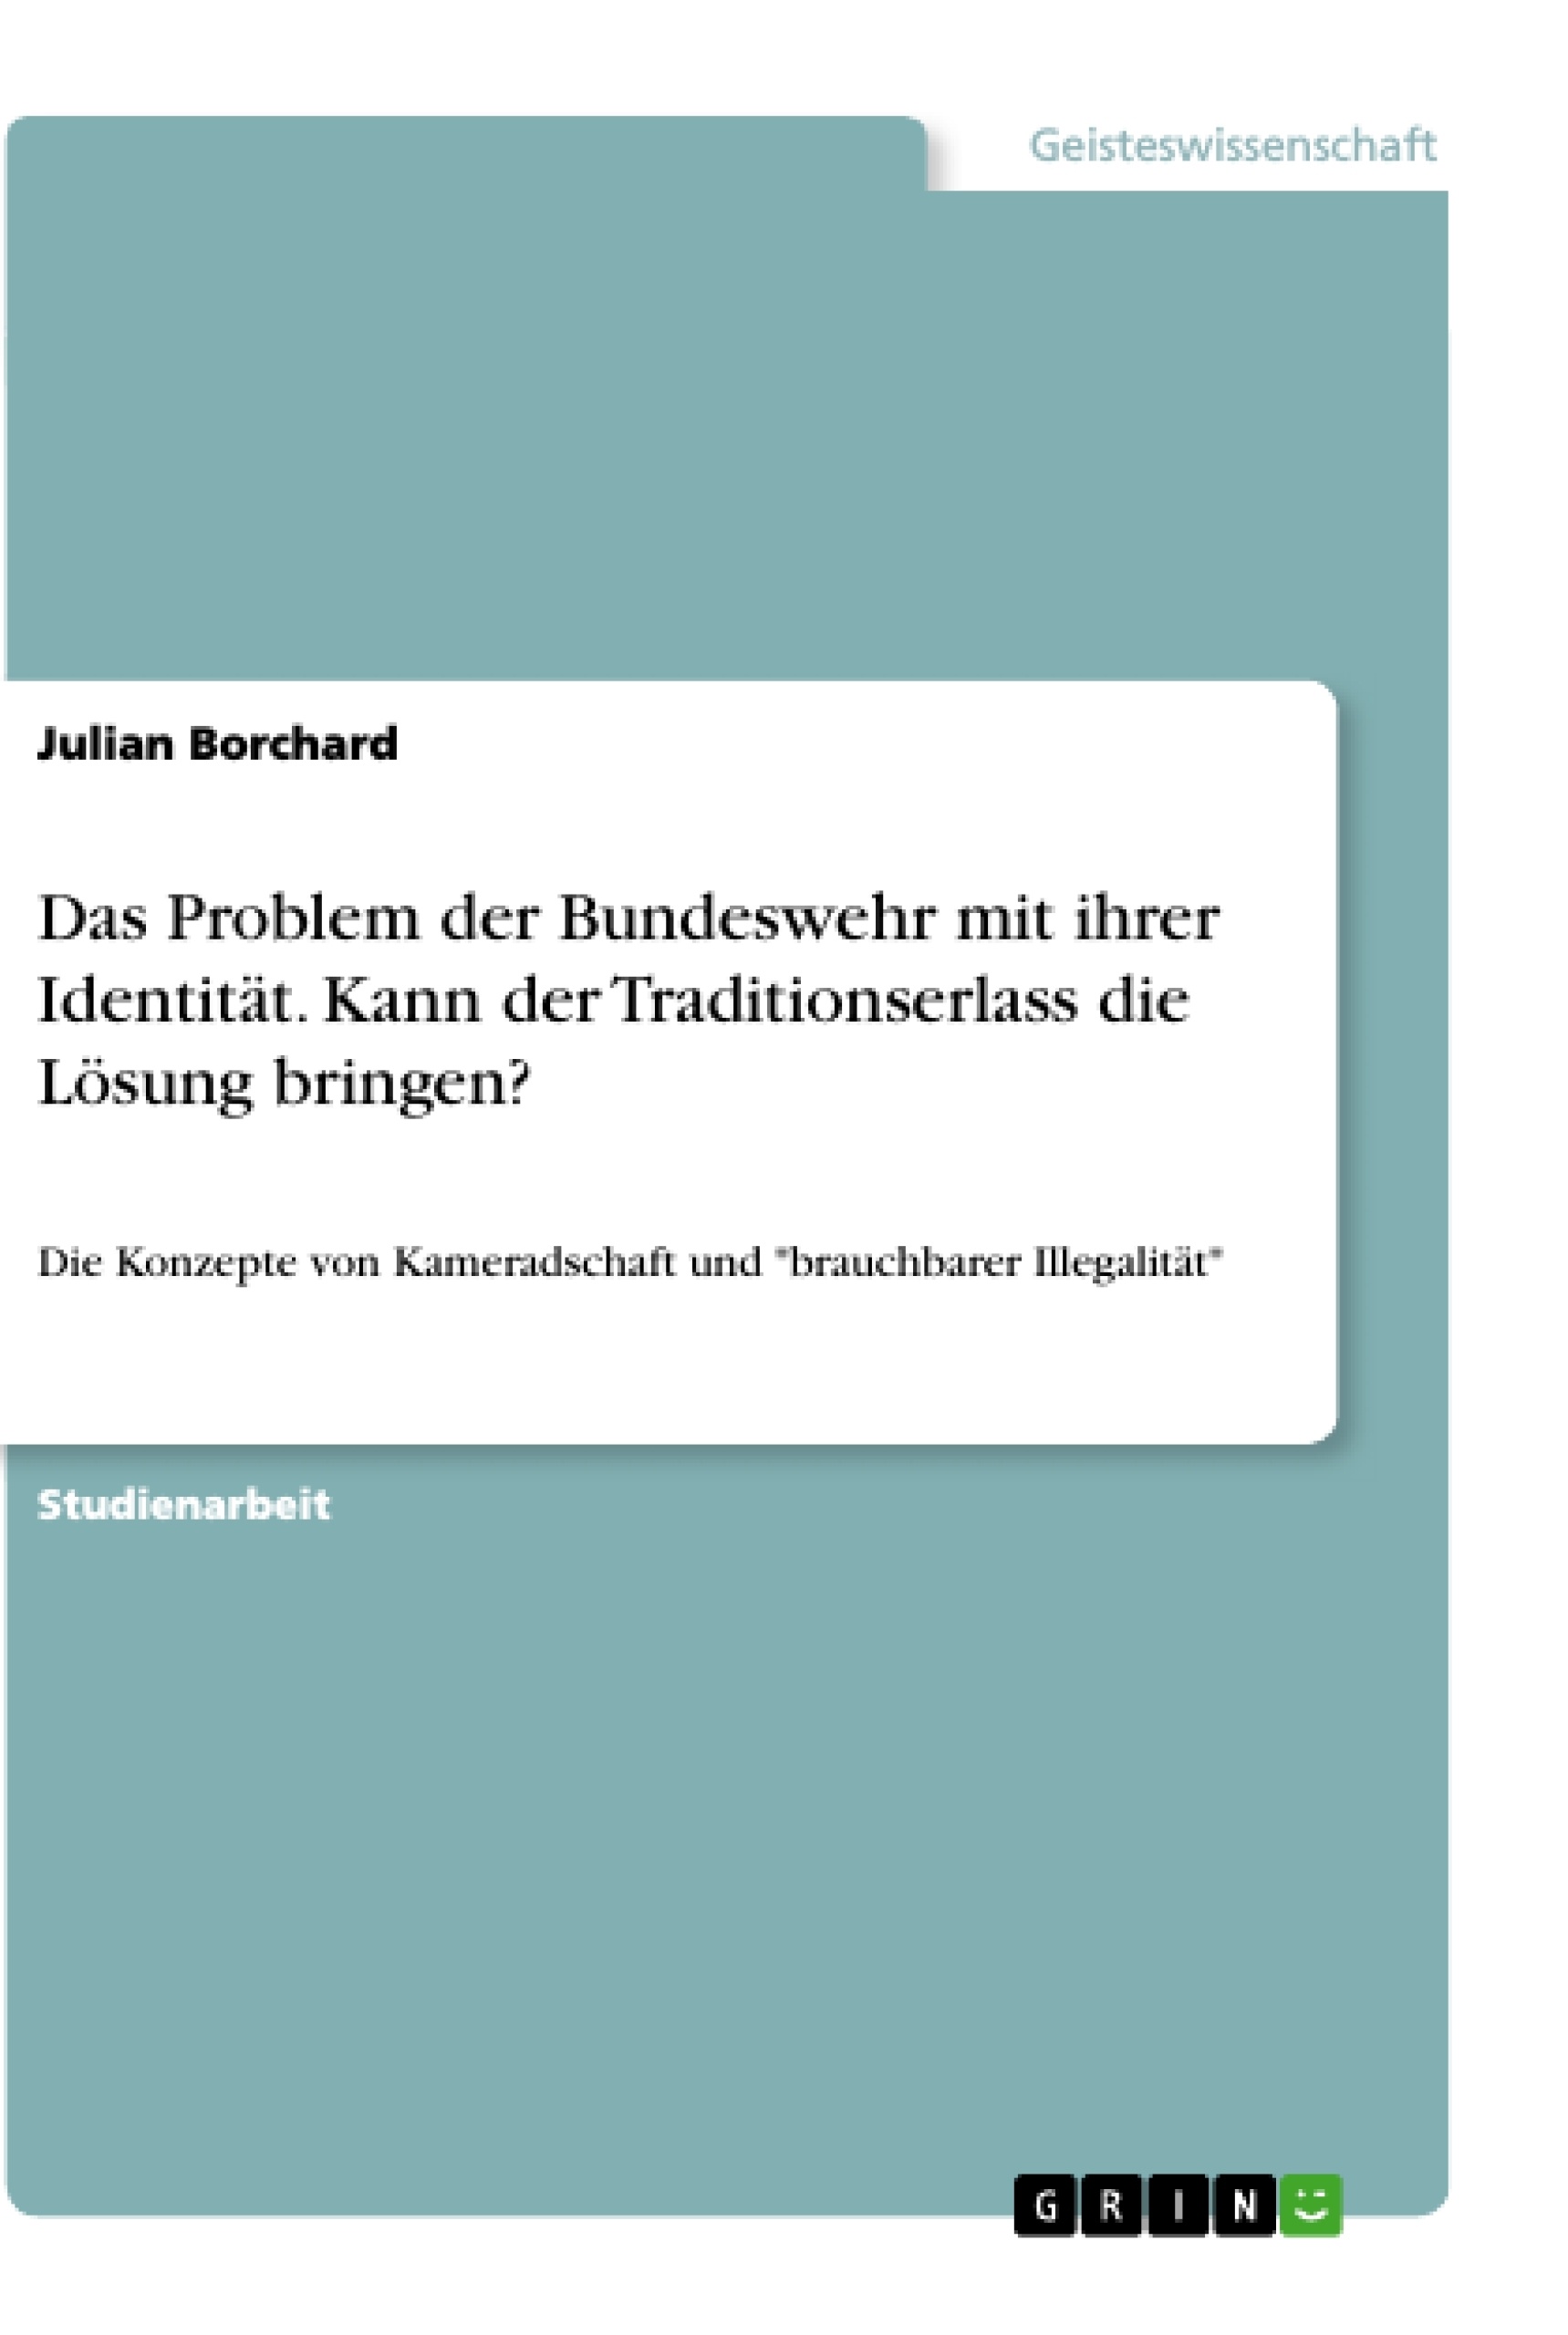 Title: Das Problem der Bundeswehr mit ihrer Identität. Kann der Traditionserlass die Lösung bringen?